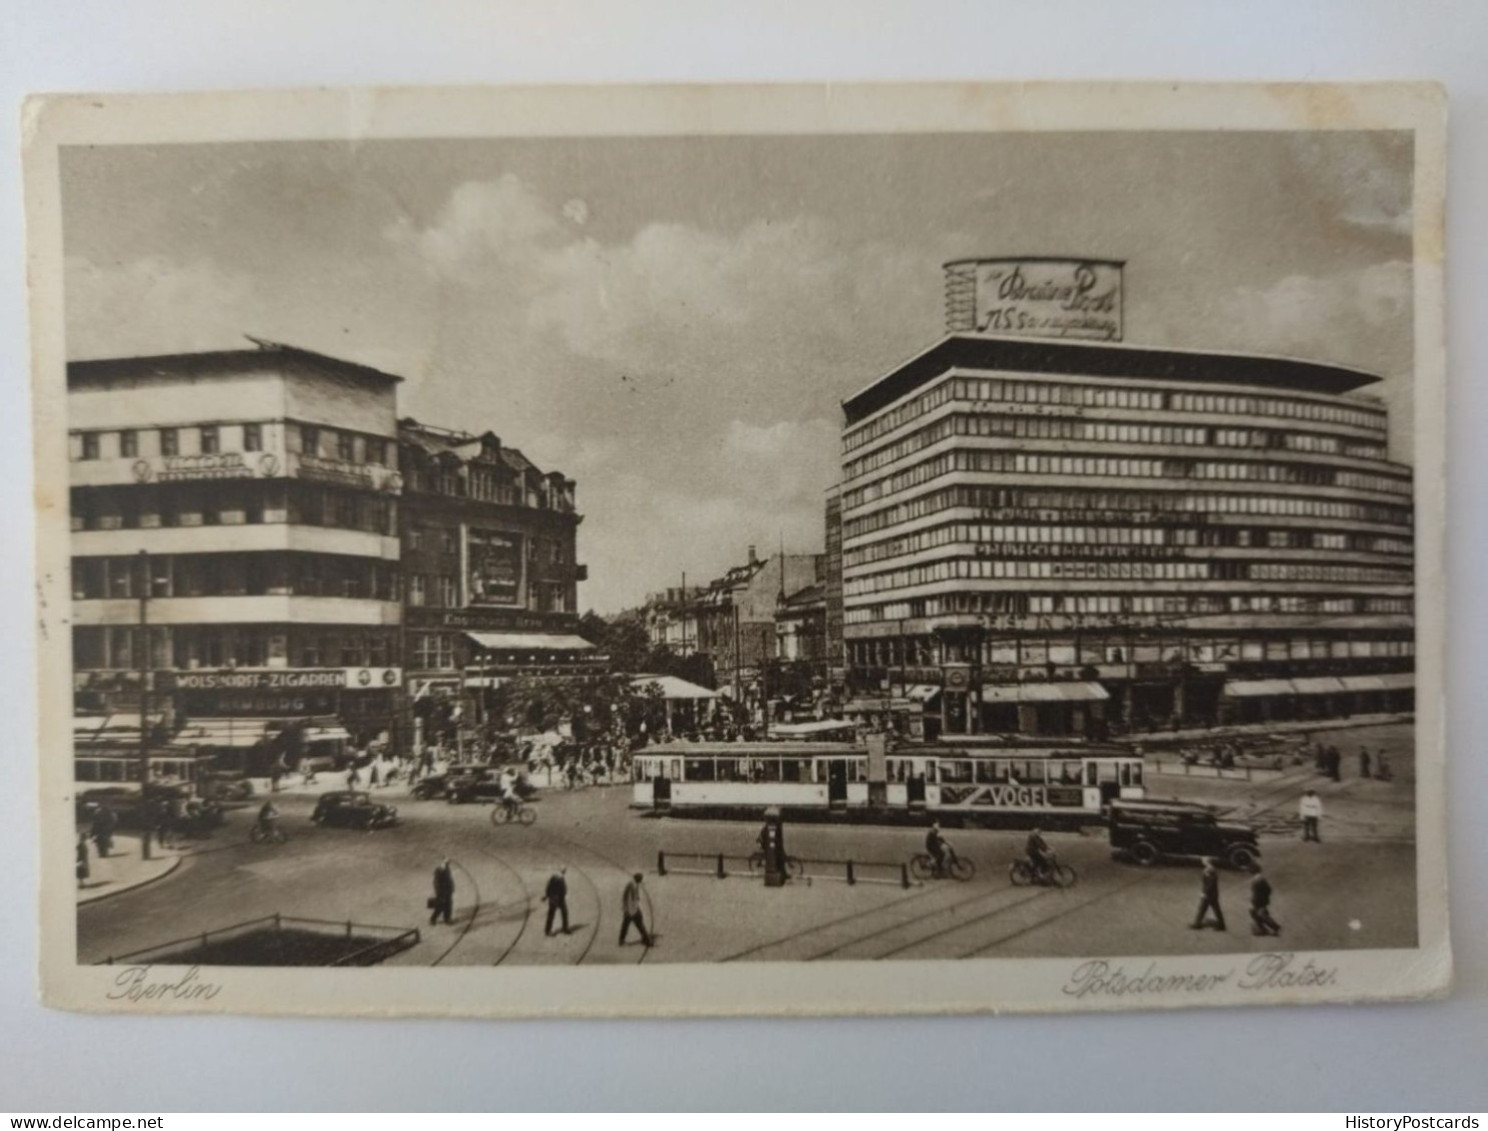 Berlin, Potsdamer Platz, Straßenbahn, Autos, Werbung, Braune Post,1939 - Mitte